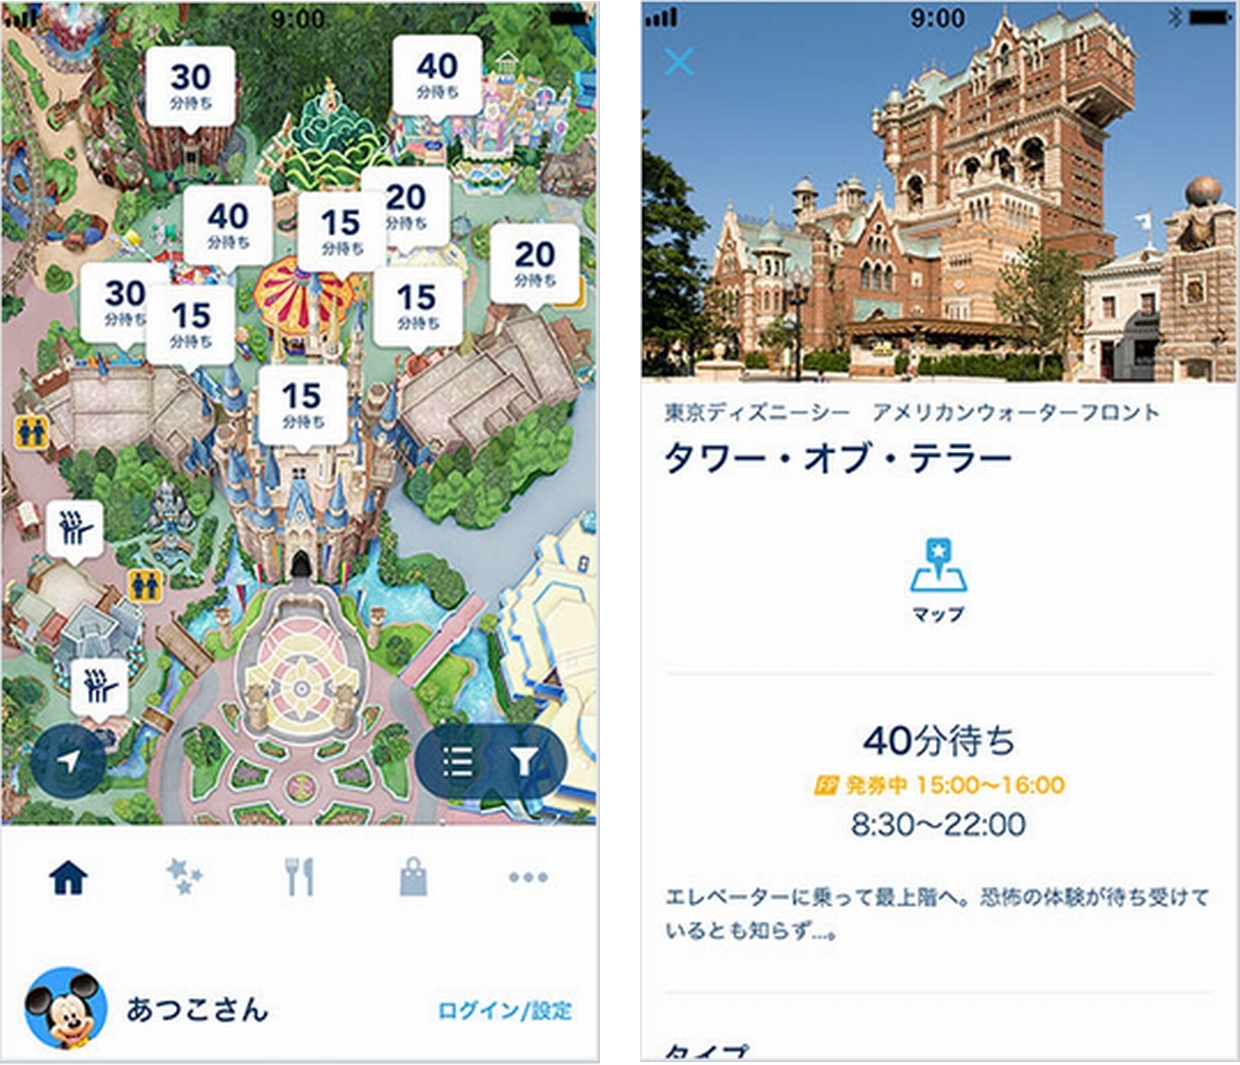 東京ディズニーリゾート初の総合公式アプリが先行公開中 ほとんどの機能が既に使用可能に デザインってオモシロイ Mdn Design Interactive